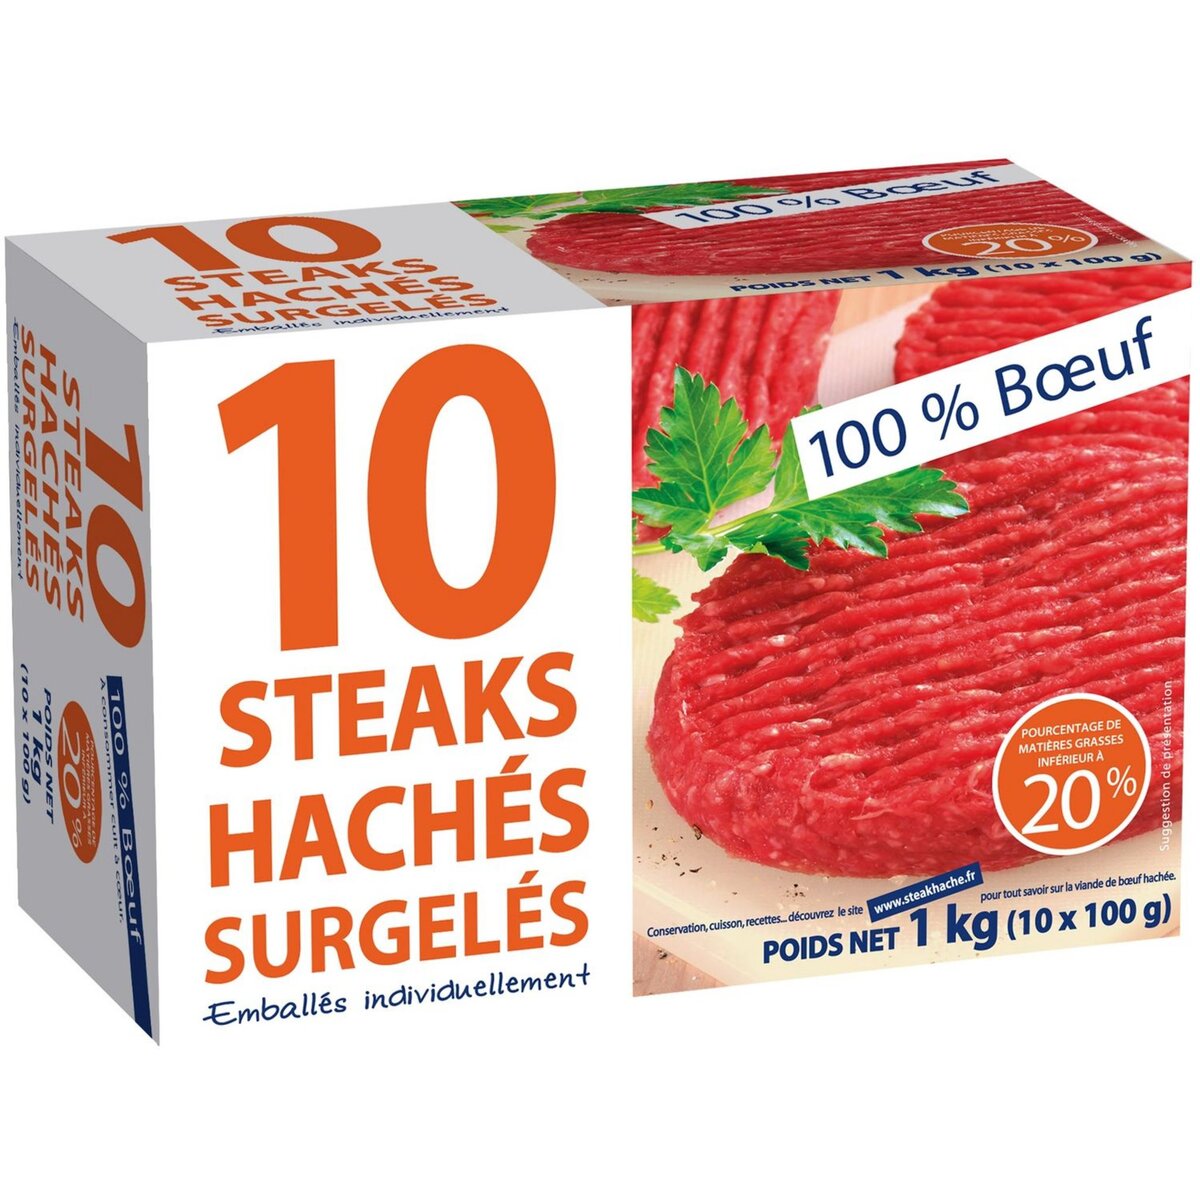 Steaks hachés 100% boeuf 10 steaks 100g